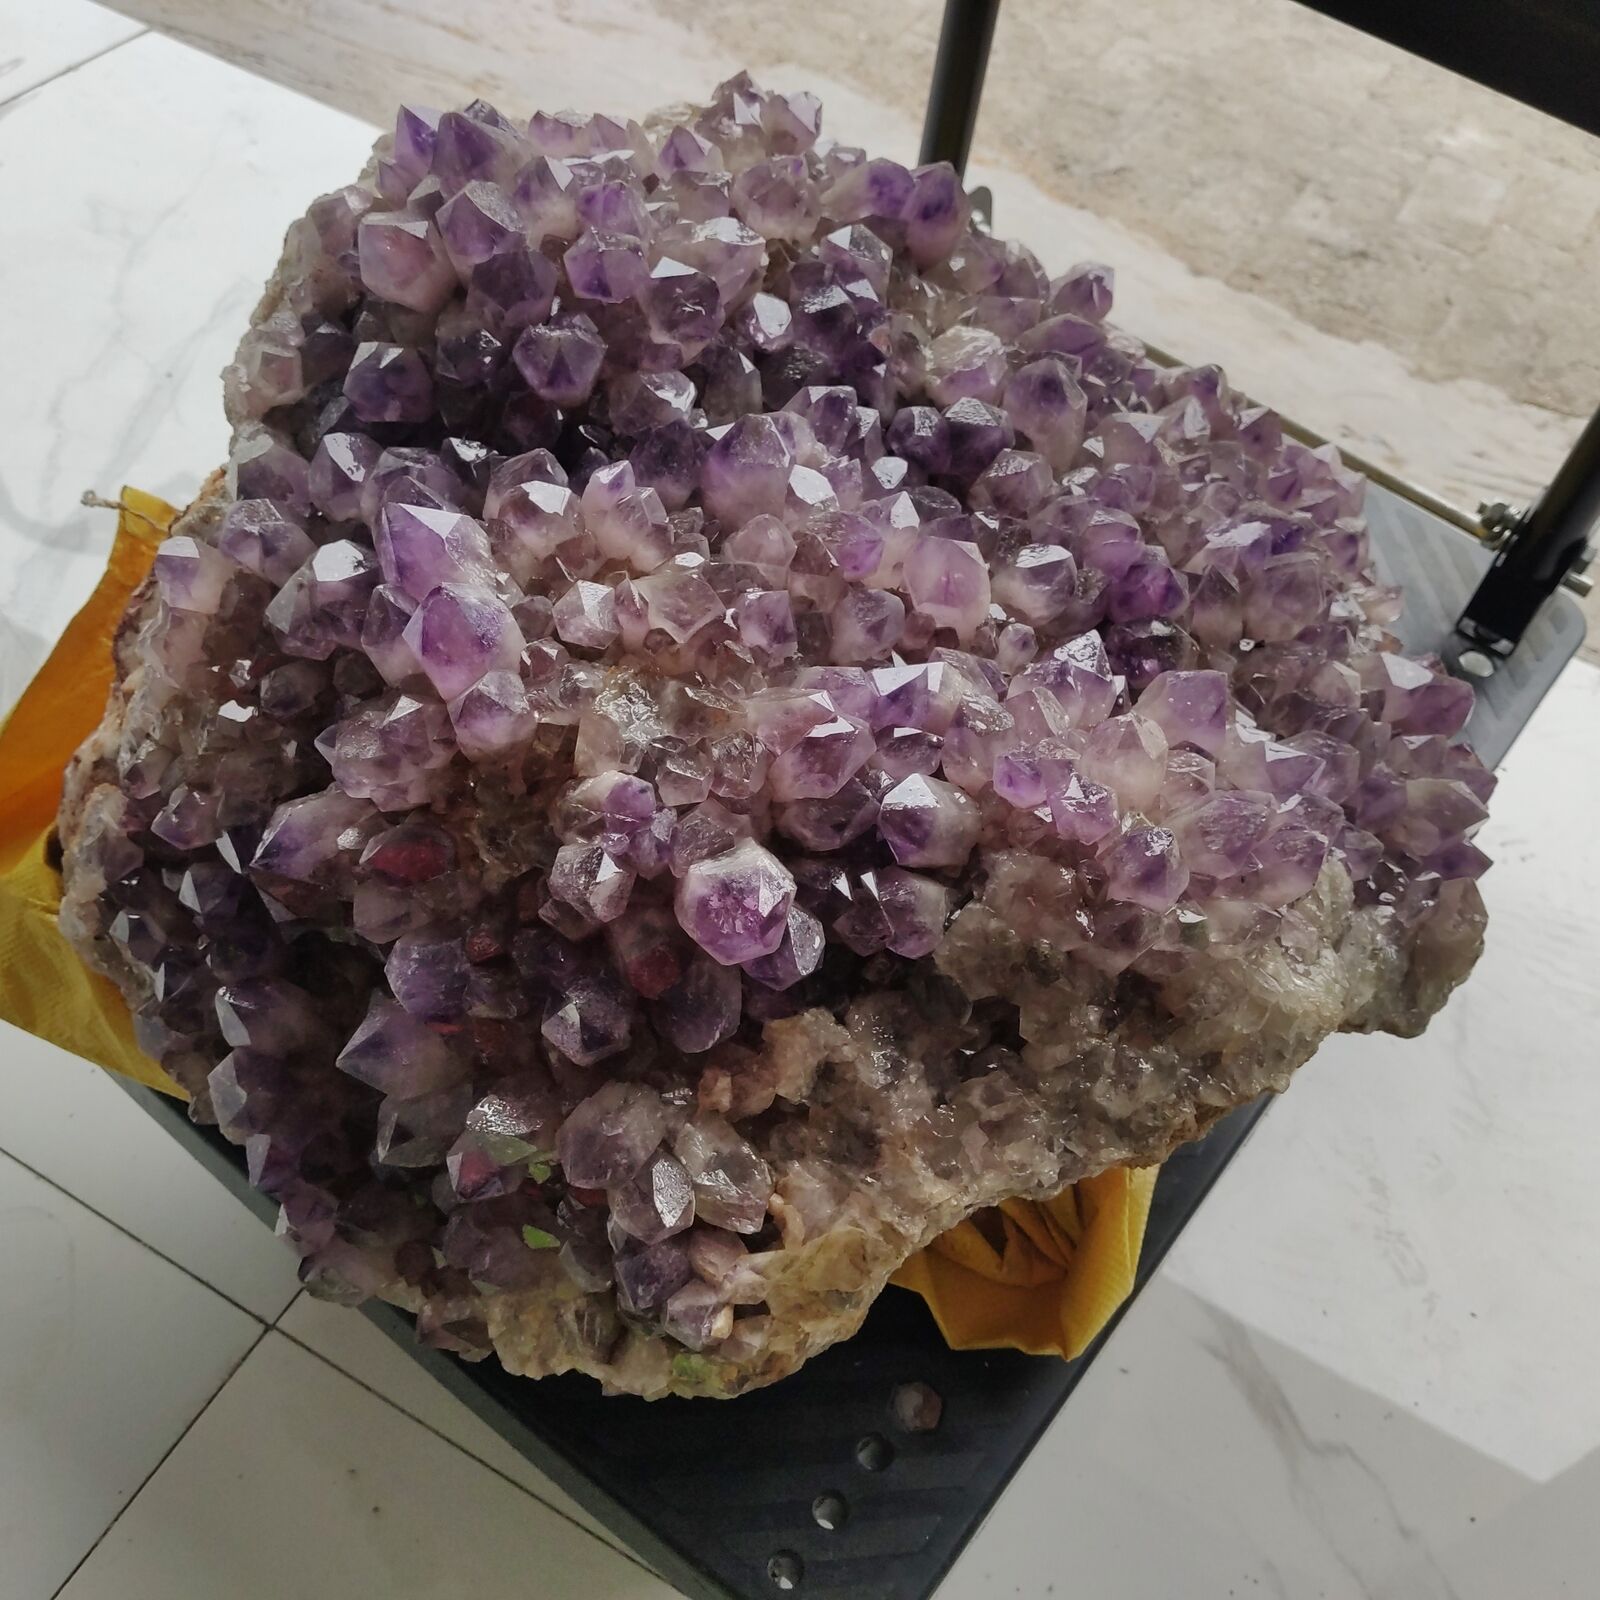 175LB Huge Natural amethyst Cluster purple Quartz Crystal Rare mineral Specimen